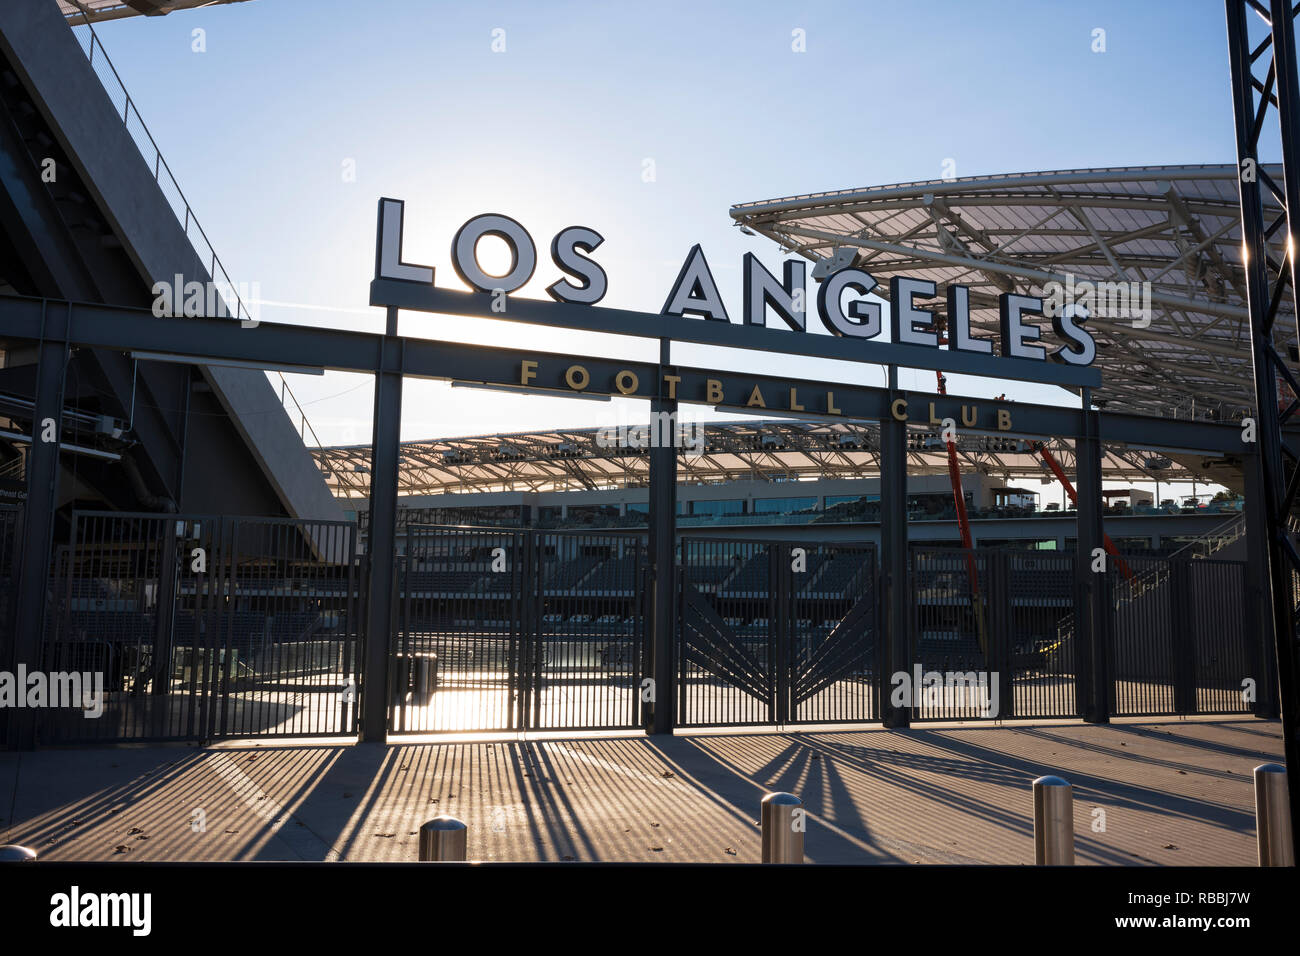 Banc of California Stadium in Exposition Park, Los Angeles, California, home of the Los Angeles Football Club. Stock Photo